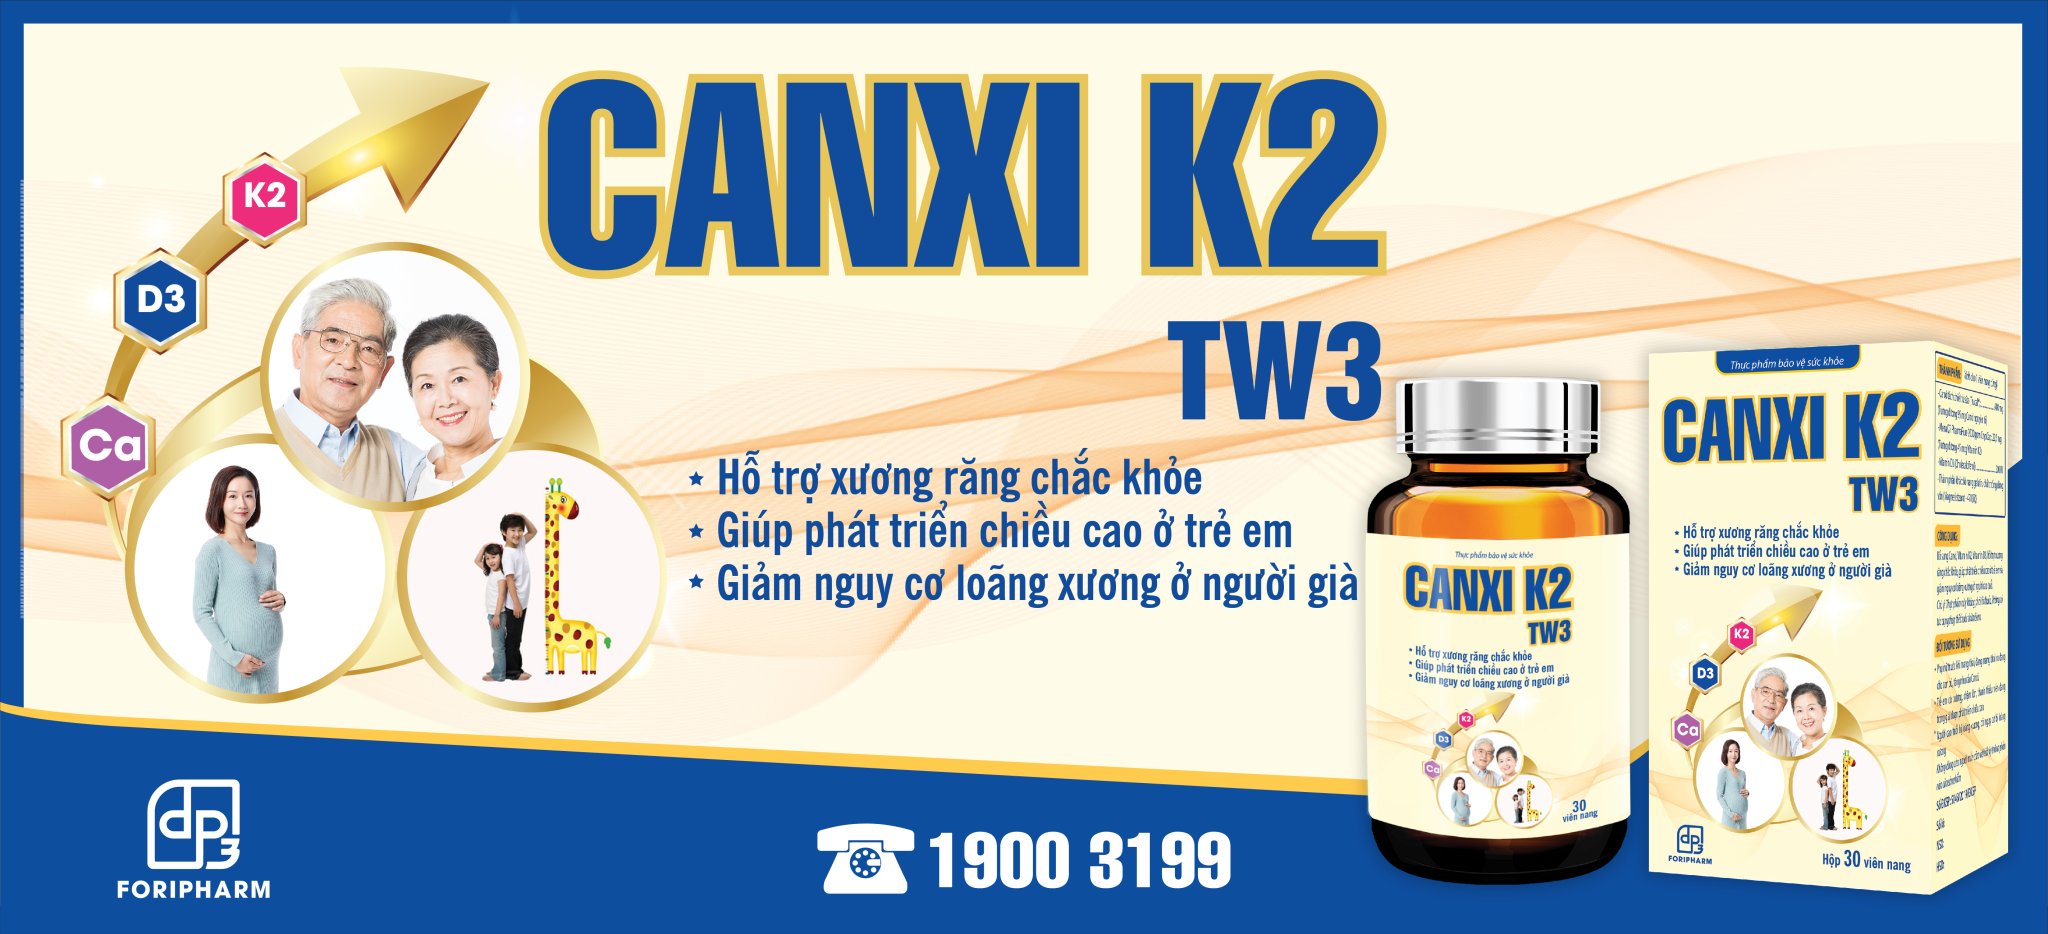 Canxi K2 TW3 bổ sung Canxi D3 K2, giúp xương răng chắc khỏe, phát triển chiều cao ở trẻ, ngăn ngừa loãng xương ở người già